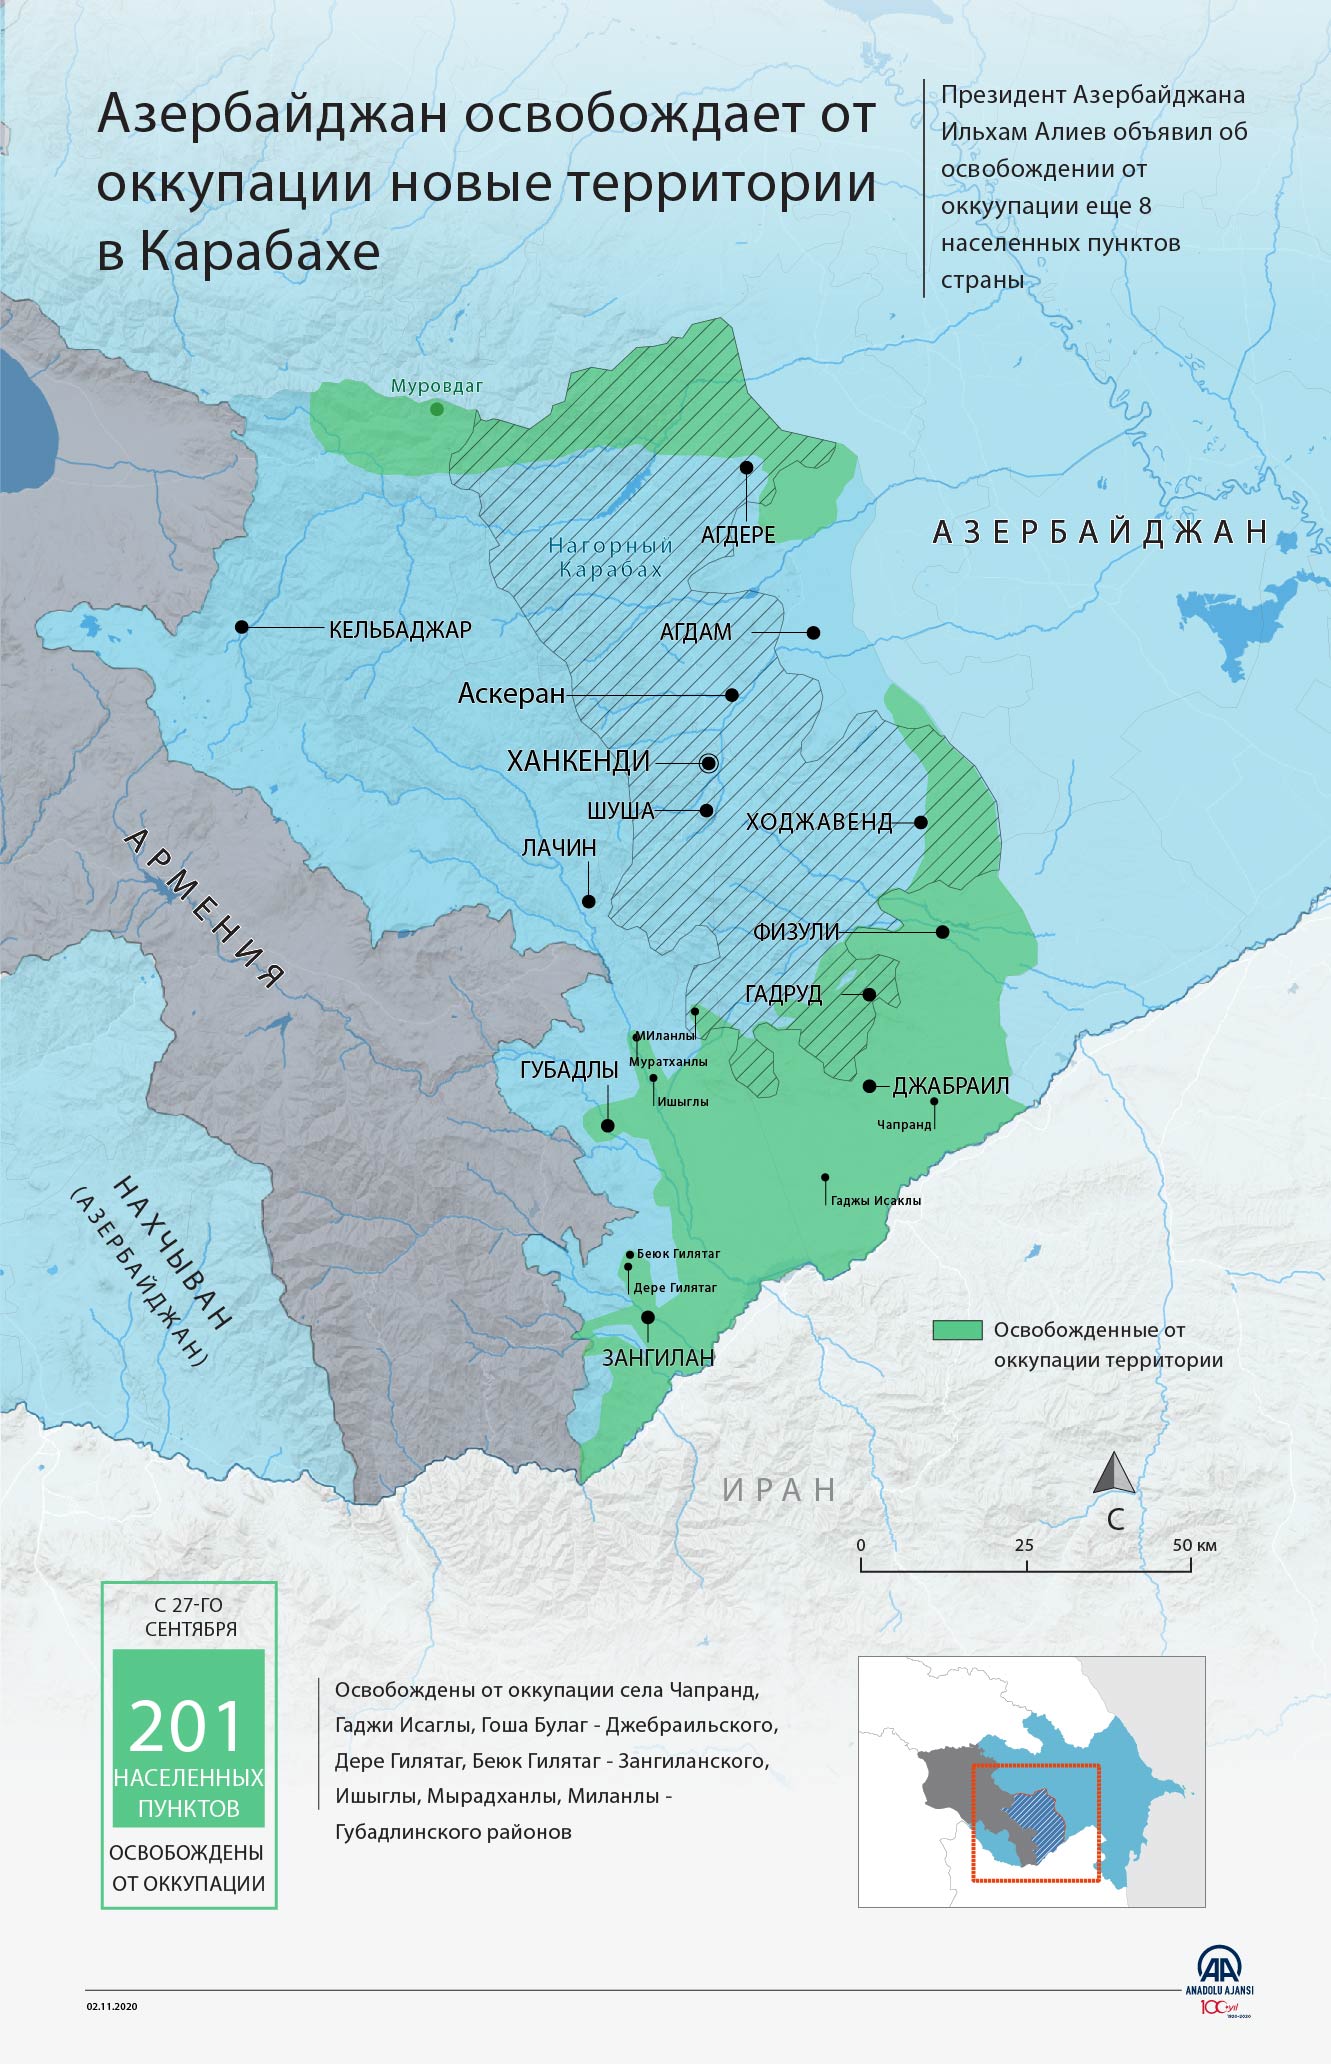 Азербайджан освобождает от оккупации новые территории в Карабахе